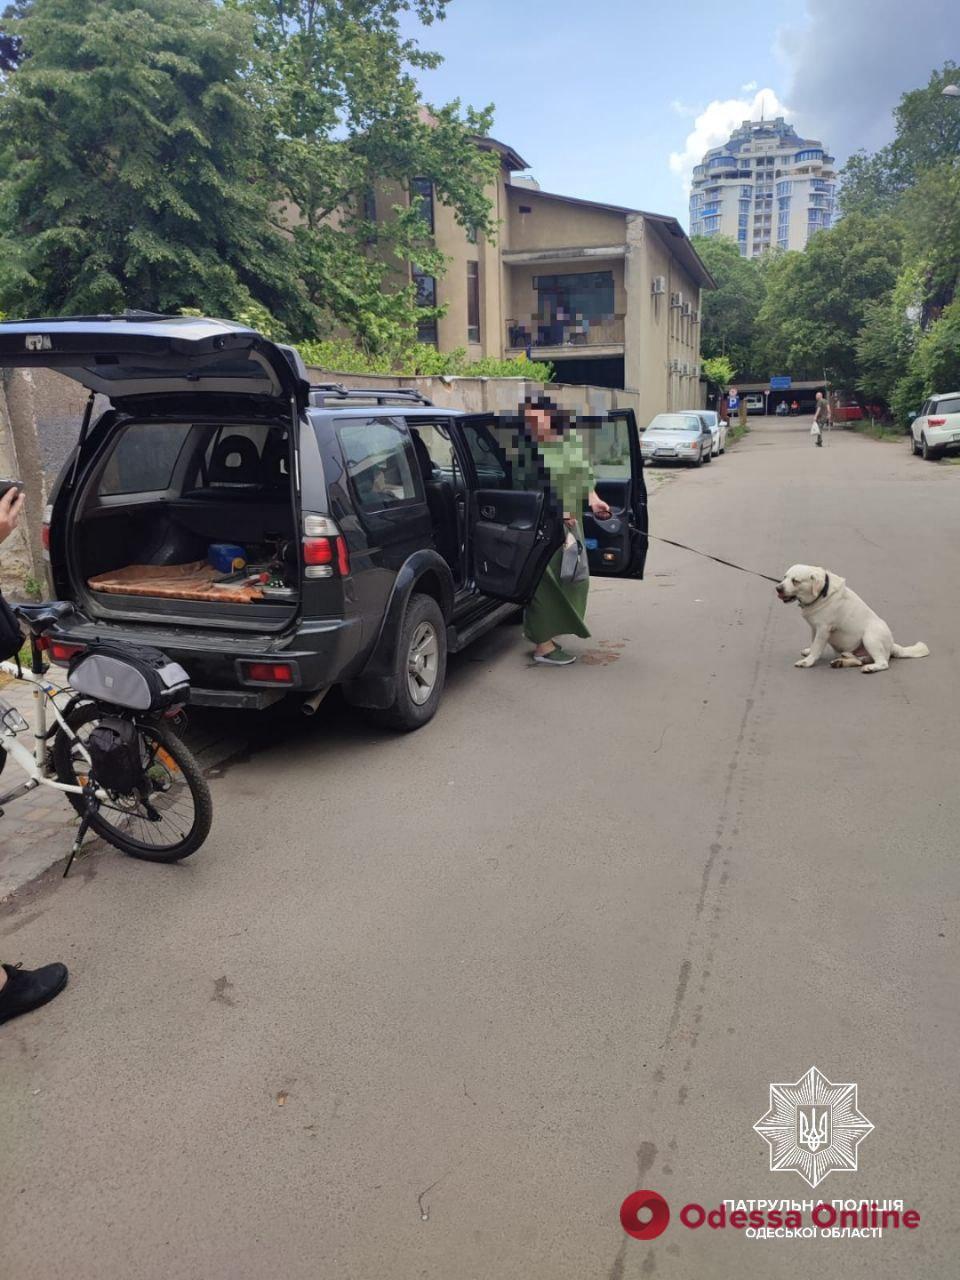 Одесситка надолго оставила собаку в закрытом автомобиле – на женщину составили админпротокол